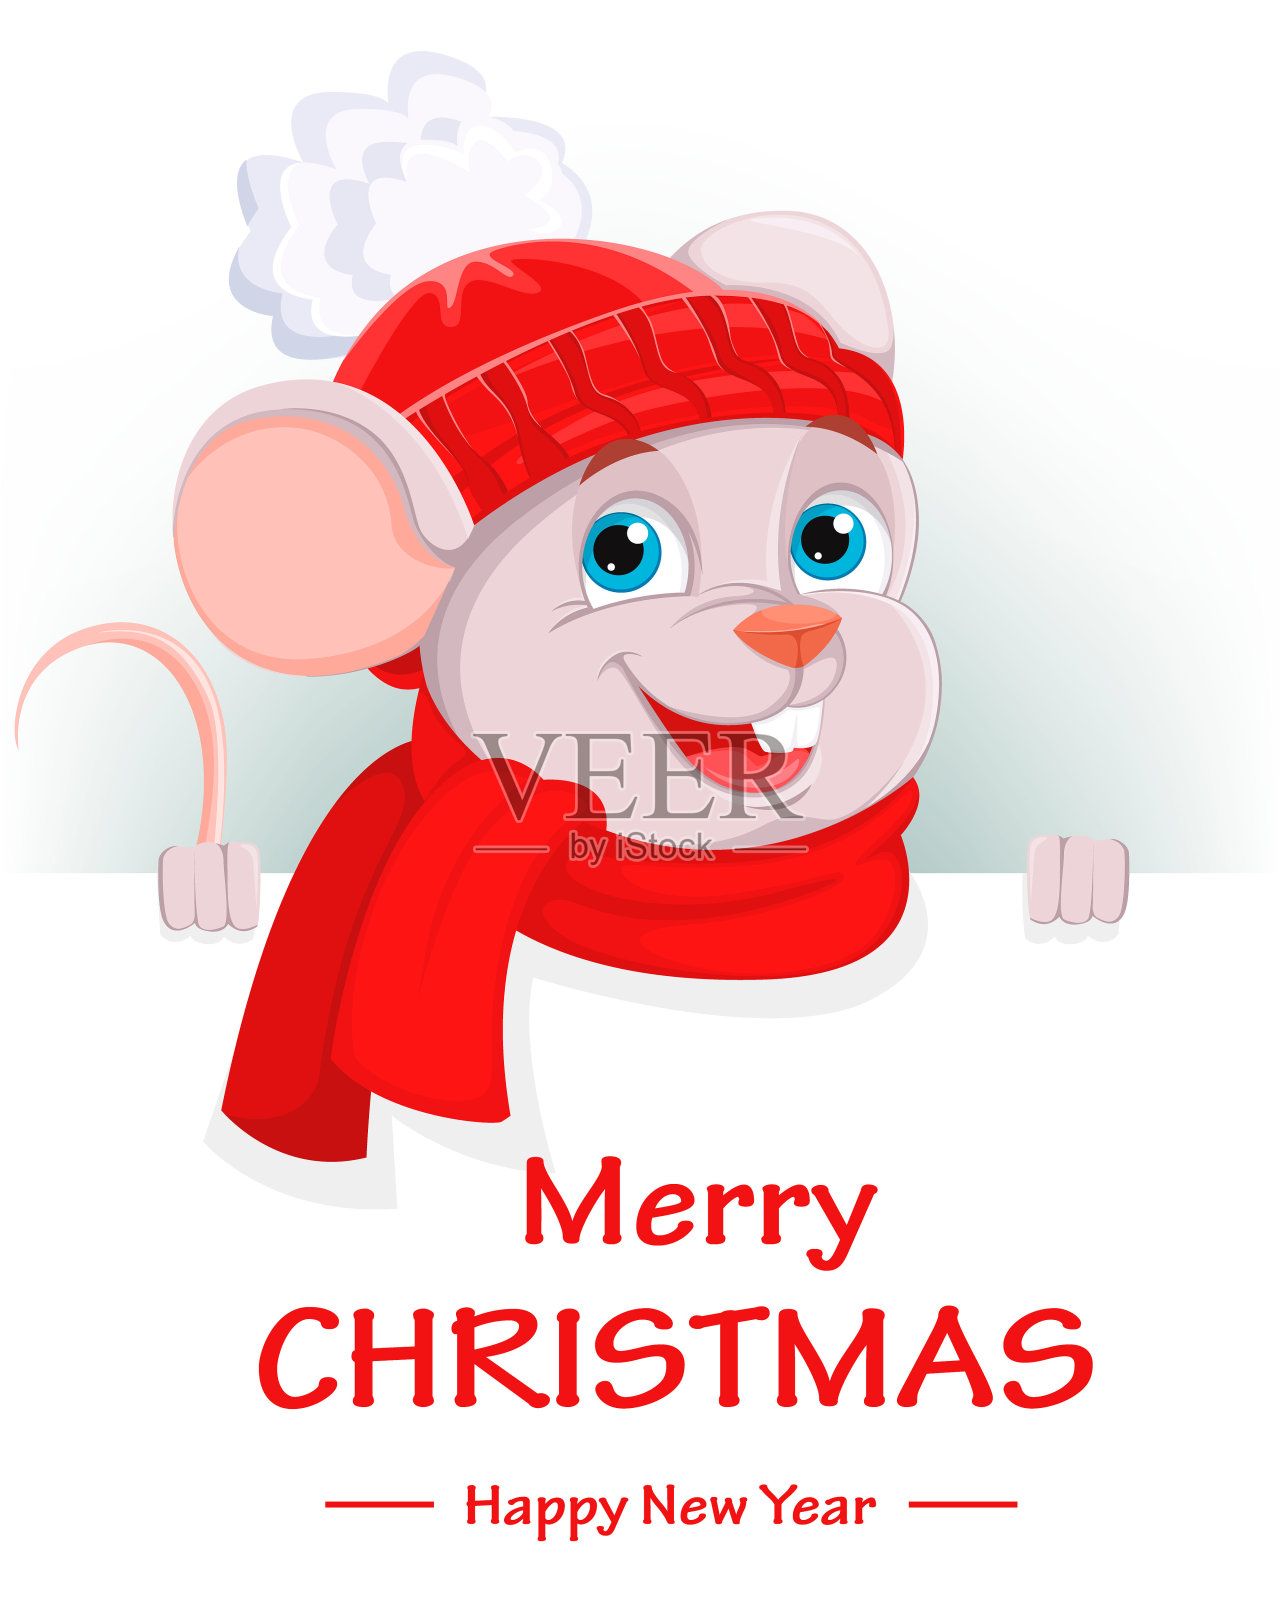 圣诞快乐。有趣的卡通人物鼠标插画图片素材